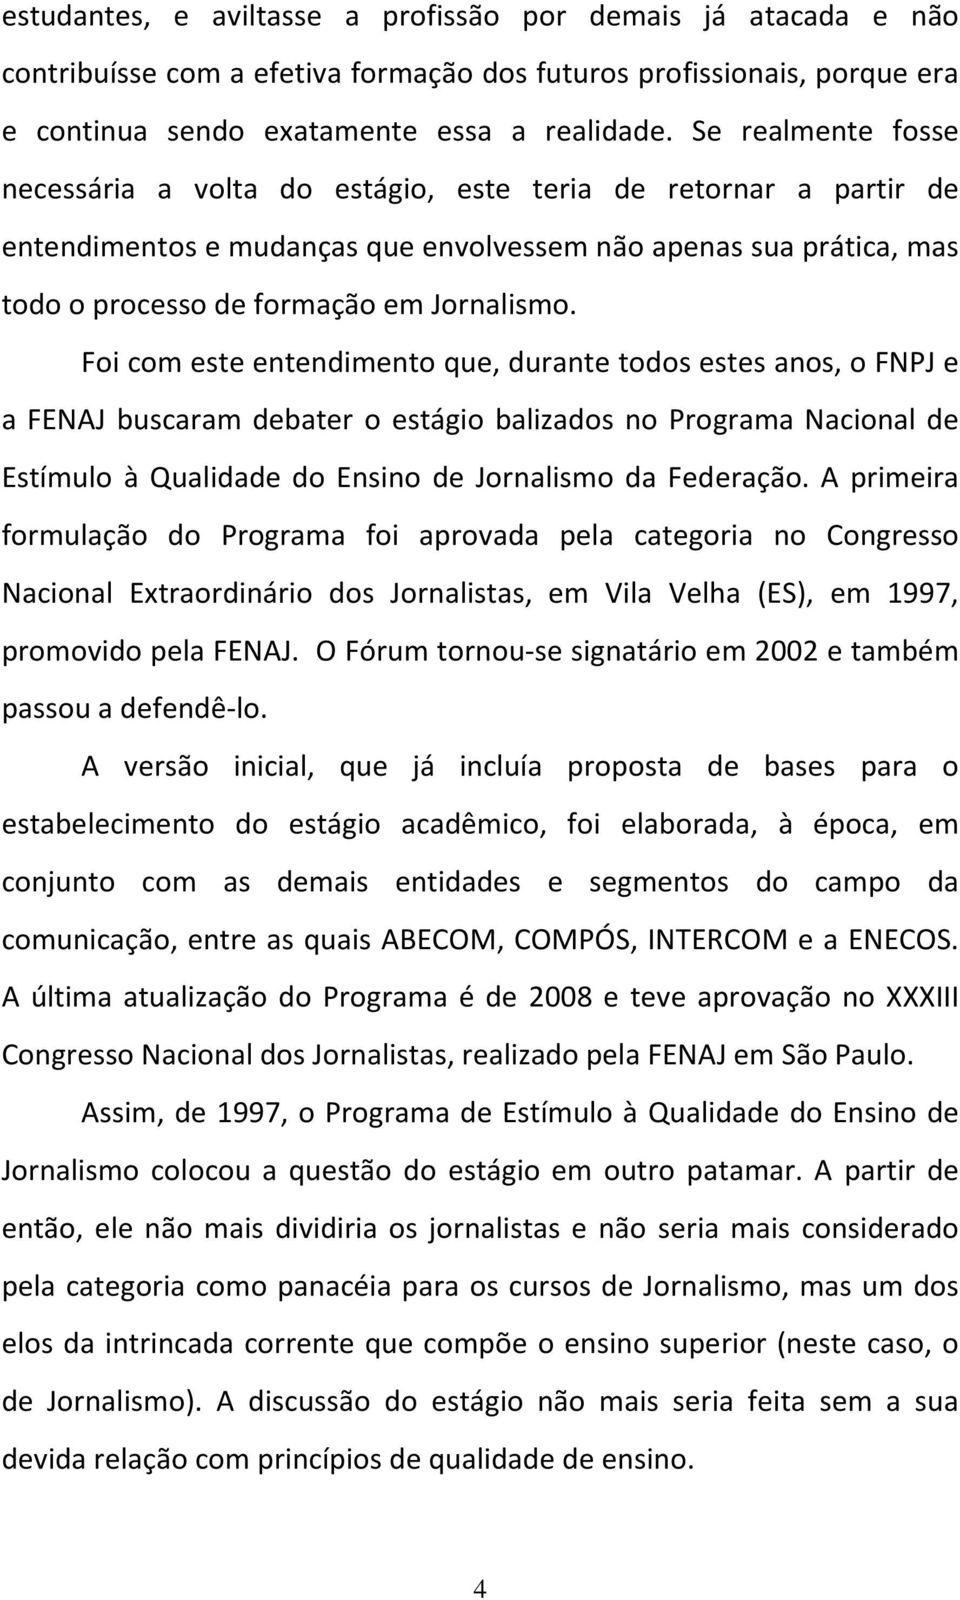 Foi com este entendimento que, durante todos estes anos, o FNPJ e a FENAJ buscaram debater o estágio balizados no Programa Nacional de Estímulo à Qualidade do Ensino de Jornalismo da Federação.